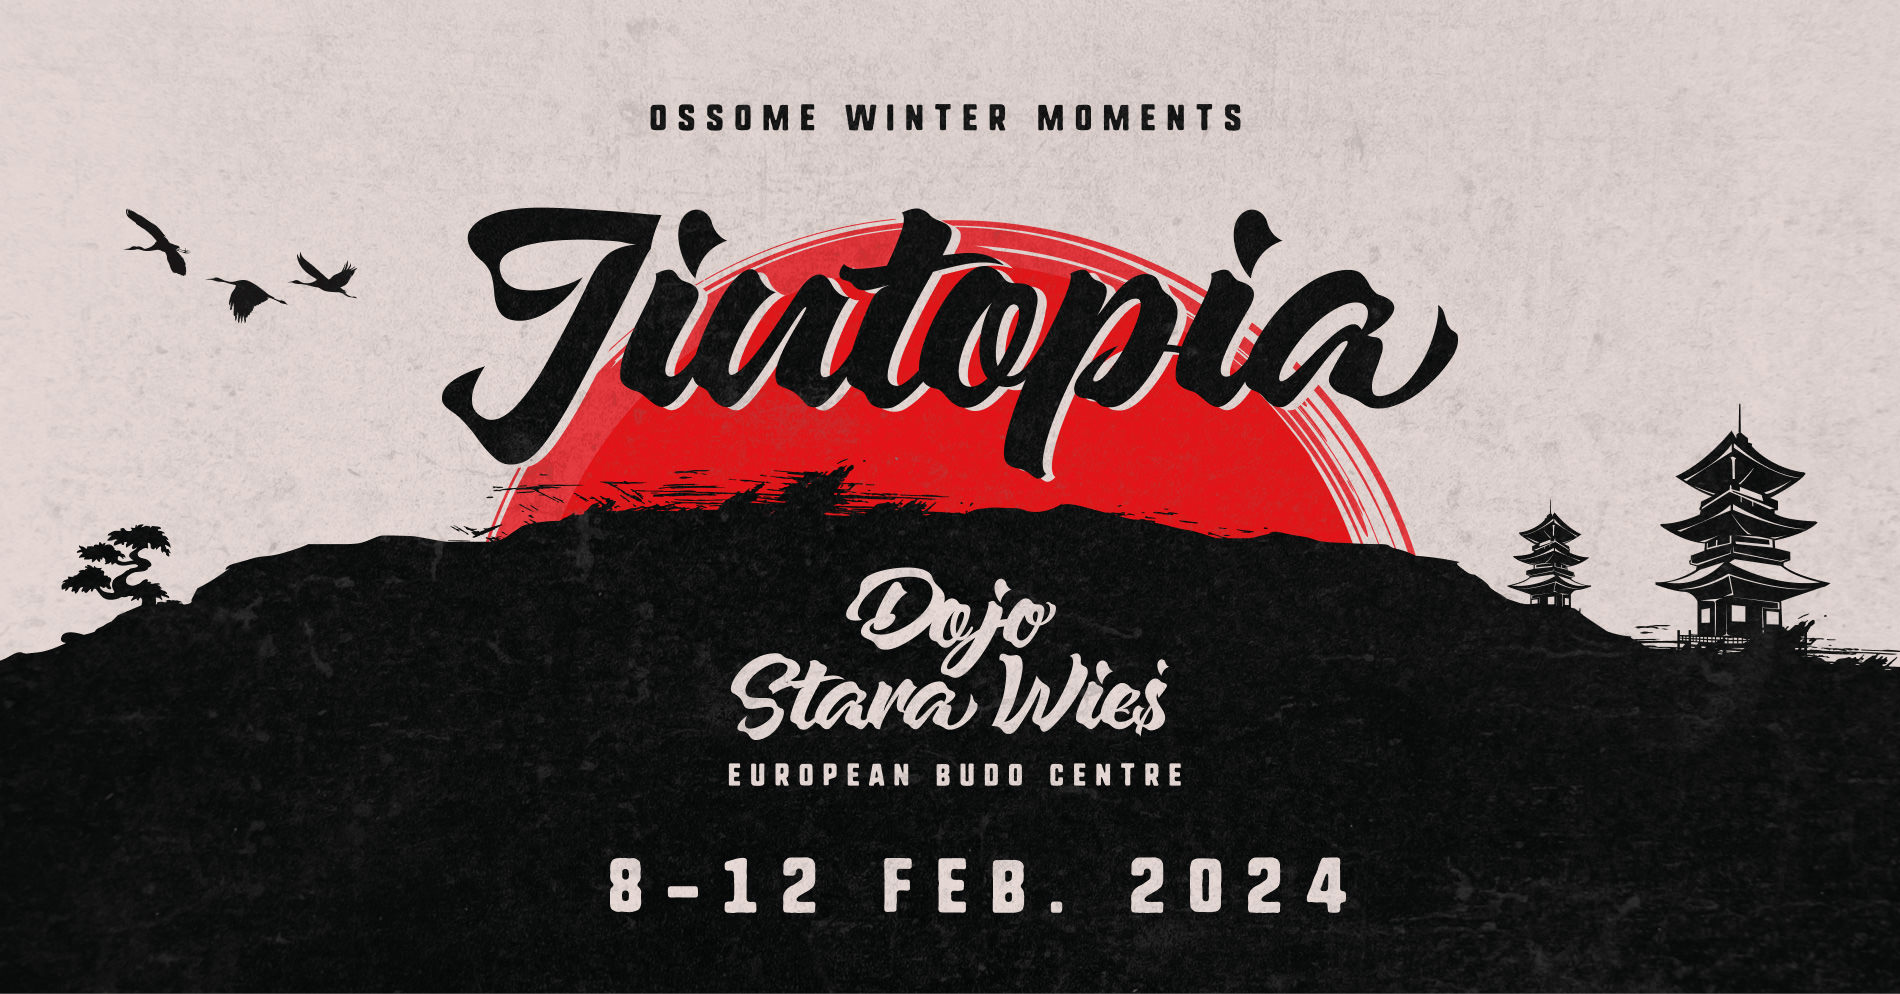 Jiutopia Winter Camp Poland